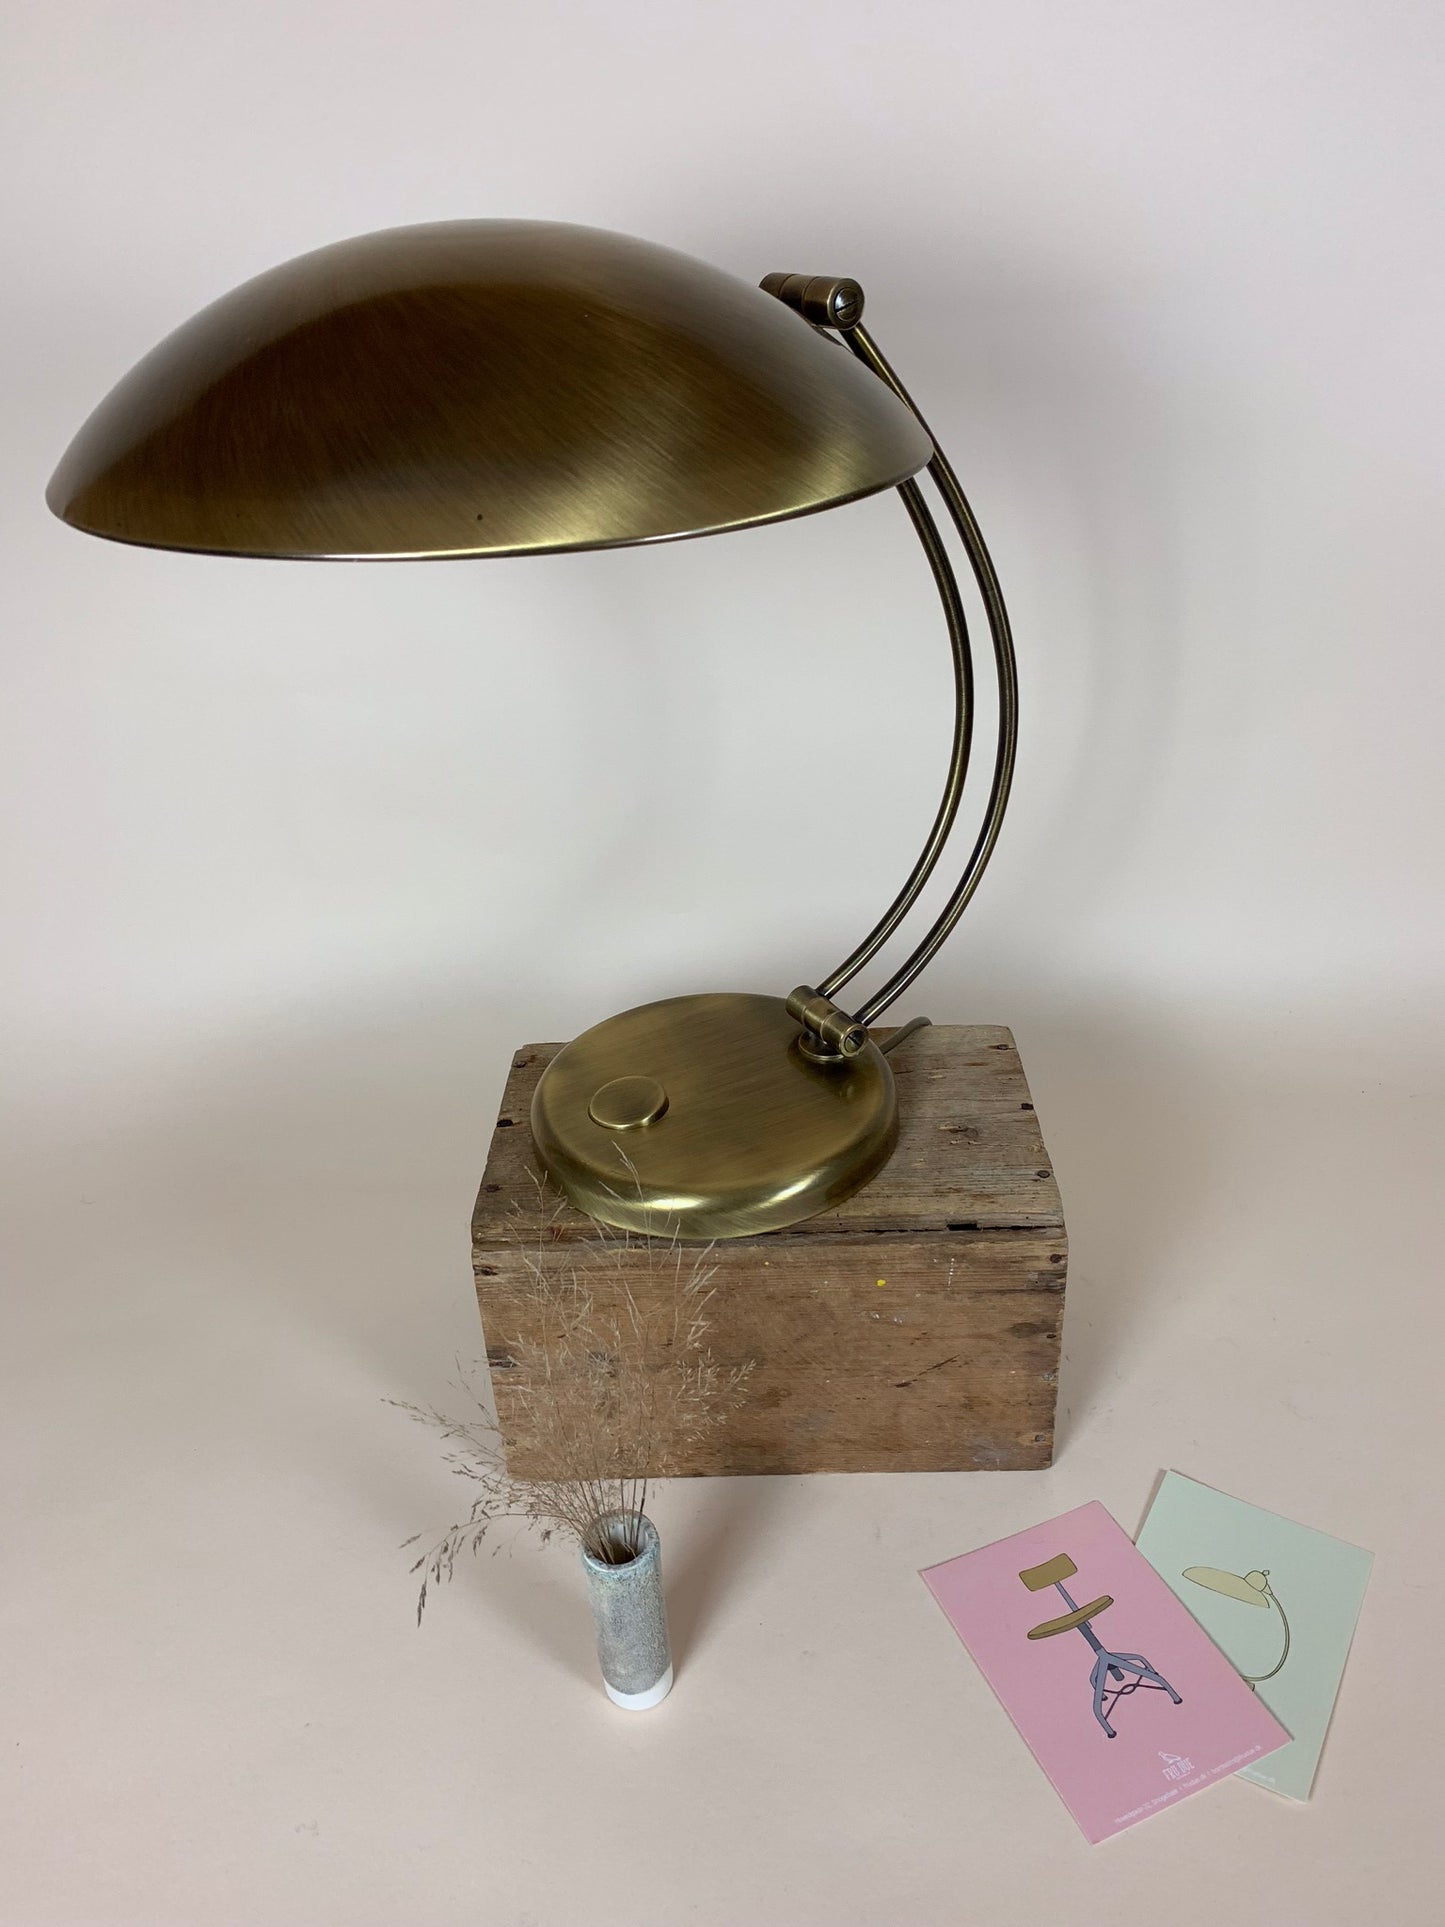 Hillebrand lampe fra omkring 1950 - Sjældent set eksemplar